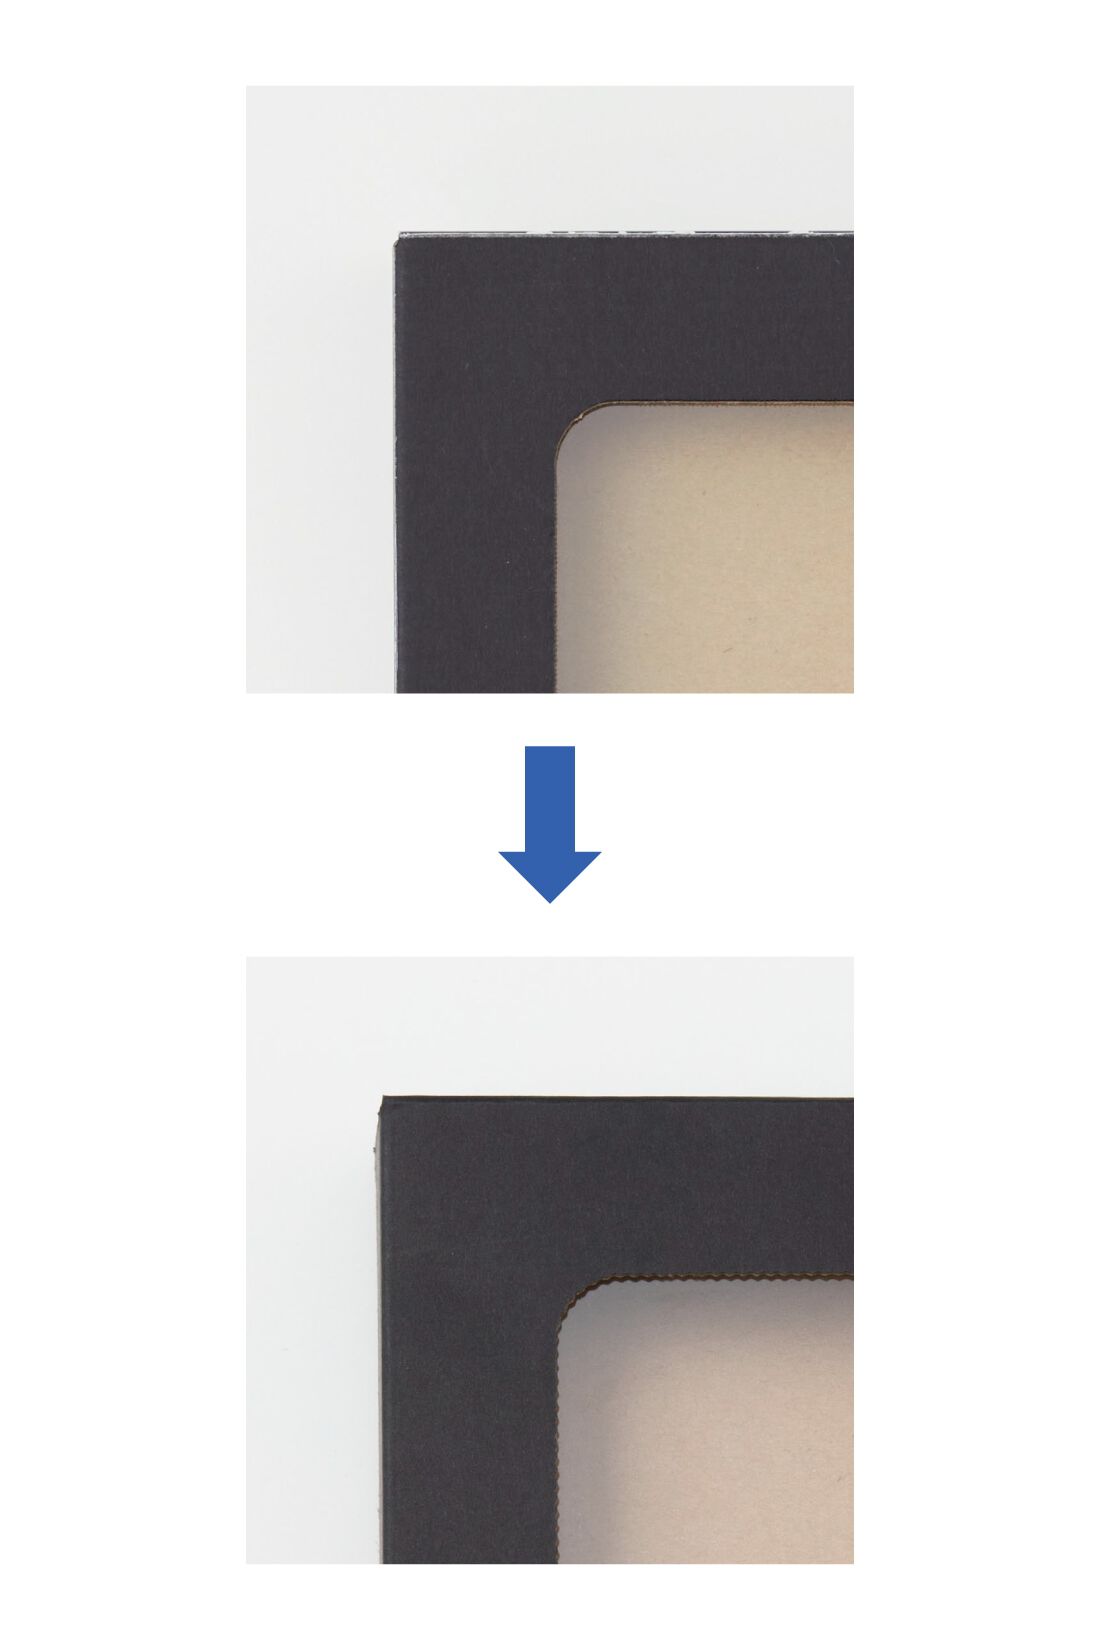 OSYAIRO|OSYAIRO  推しを飾って収納できるTフレーム〈ブラック〉10個セット|枠のなみなみ具合はこんな感じ。 写真上：まっすぐカットされた枠　写真下：なみなみカットされた枠